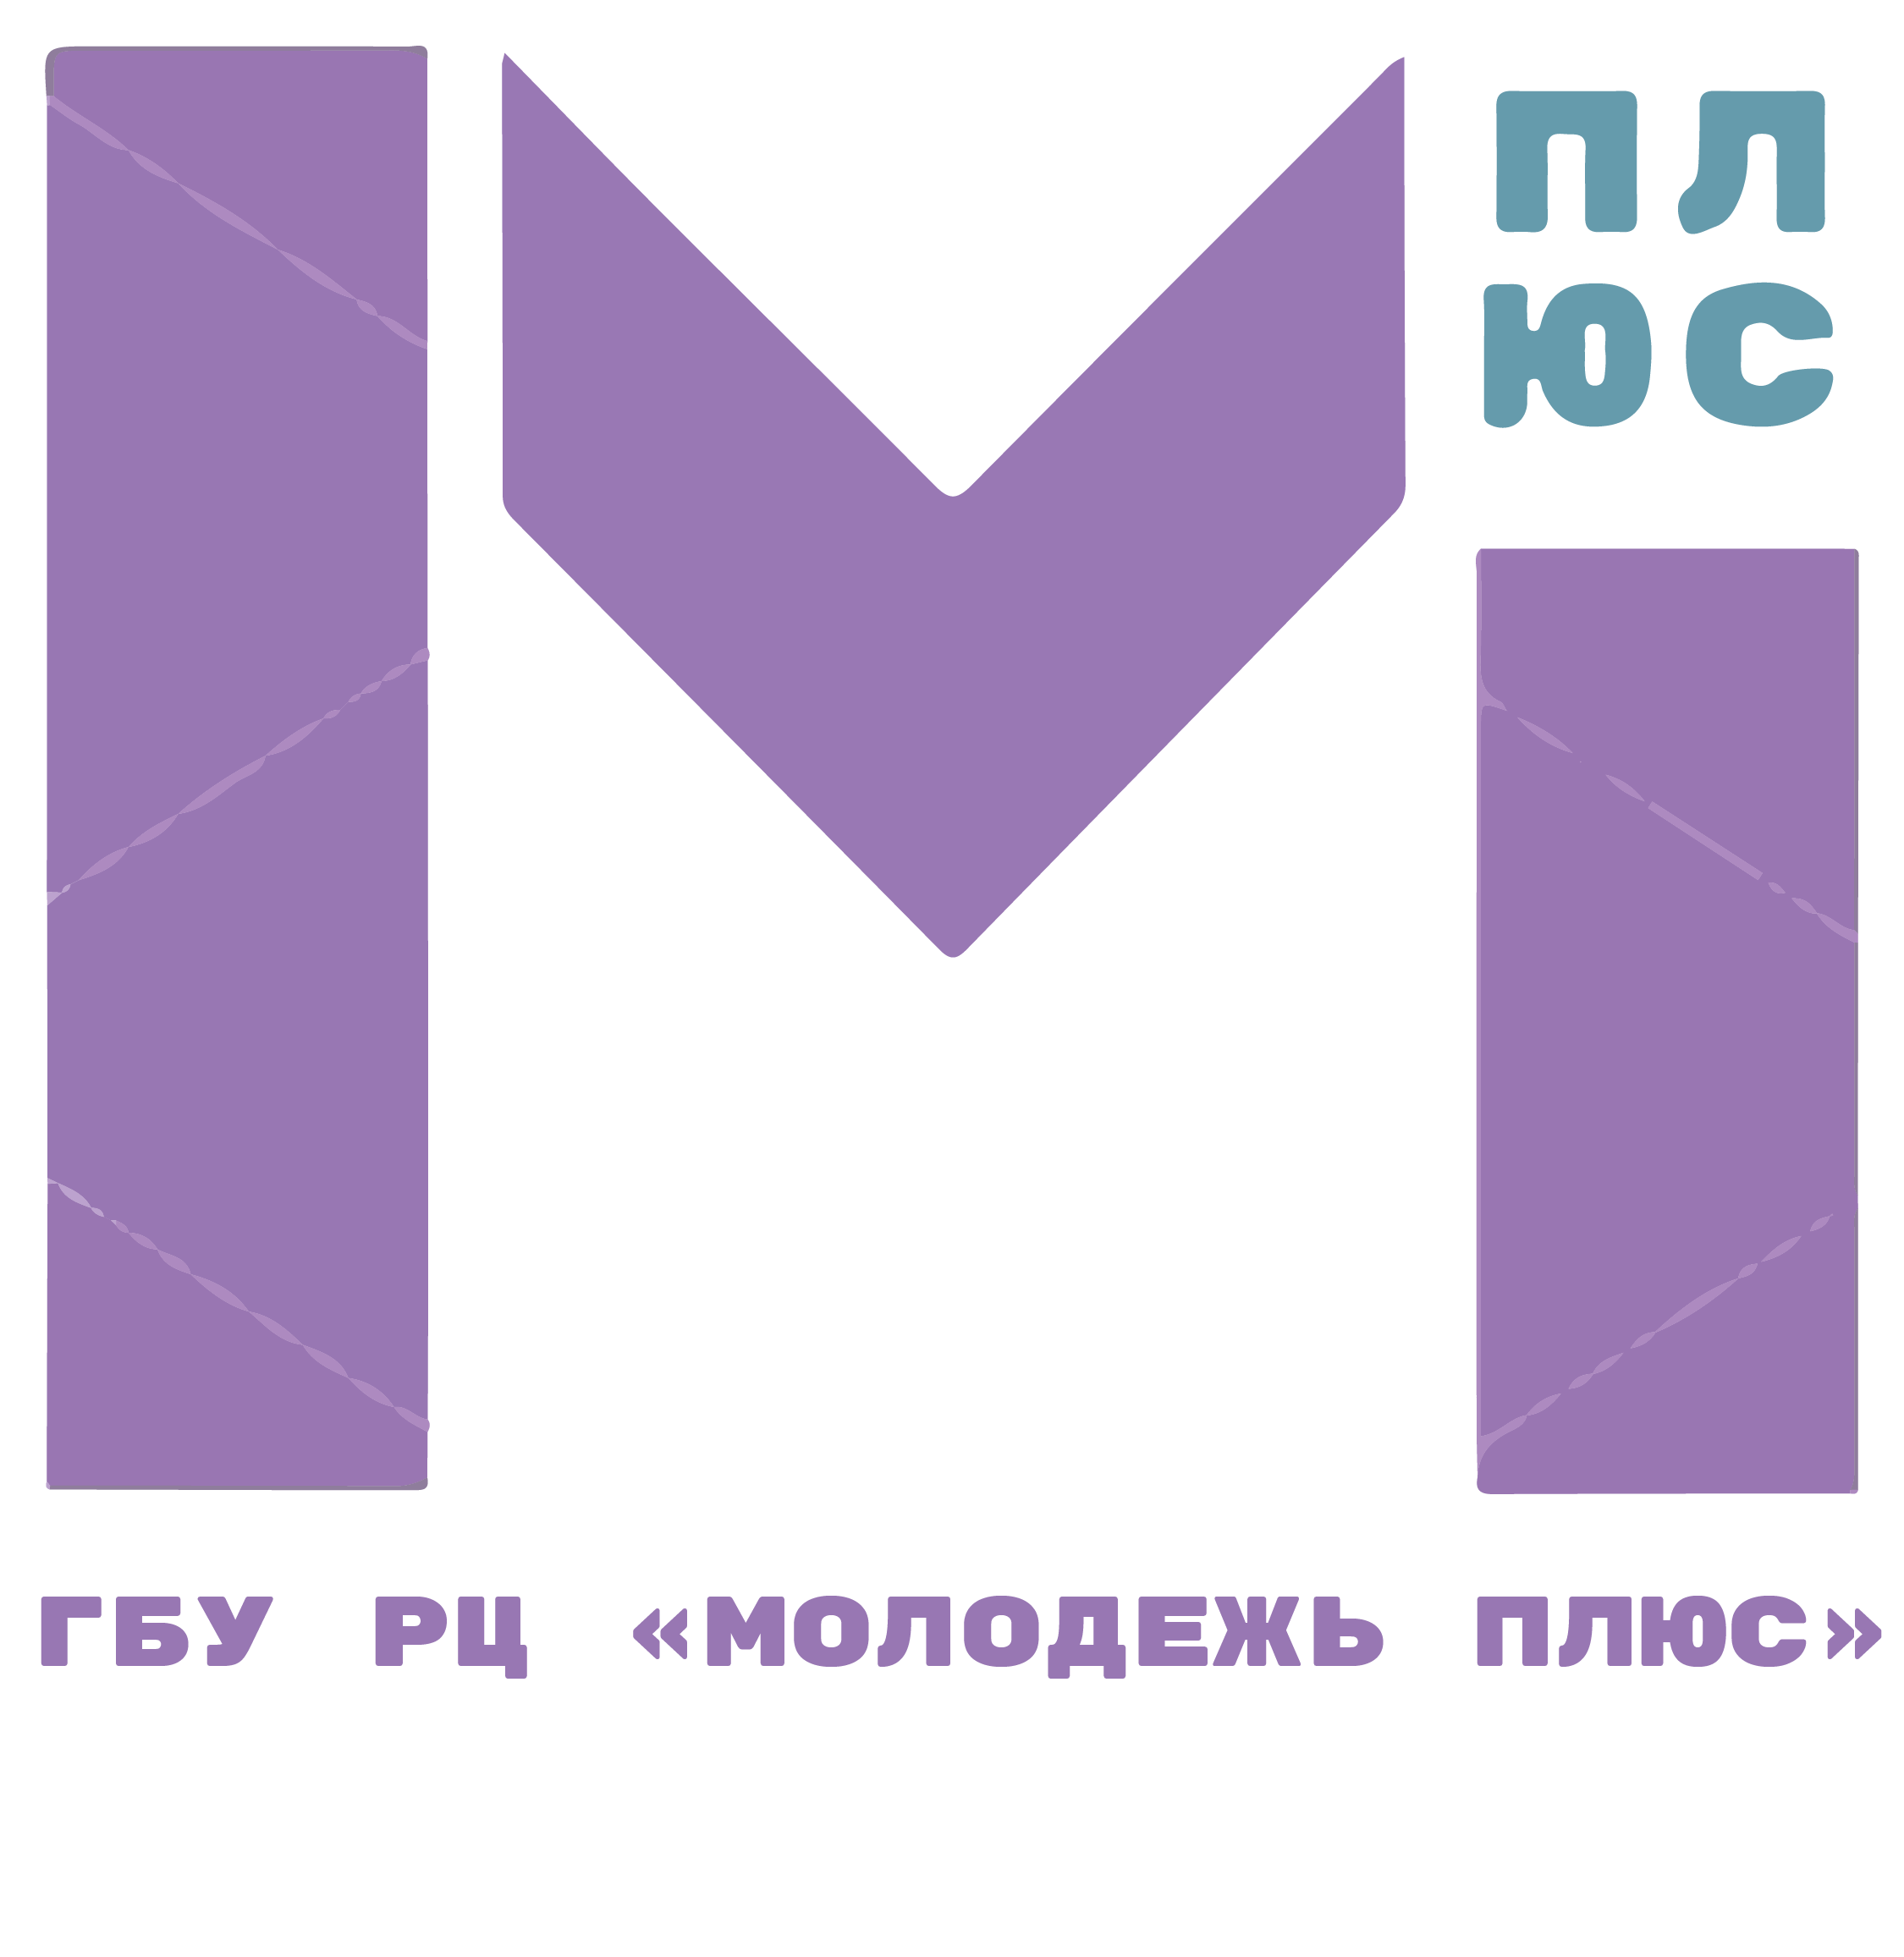 Логотип ГБУ РЦ "Молодёжь плюс"